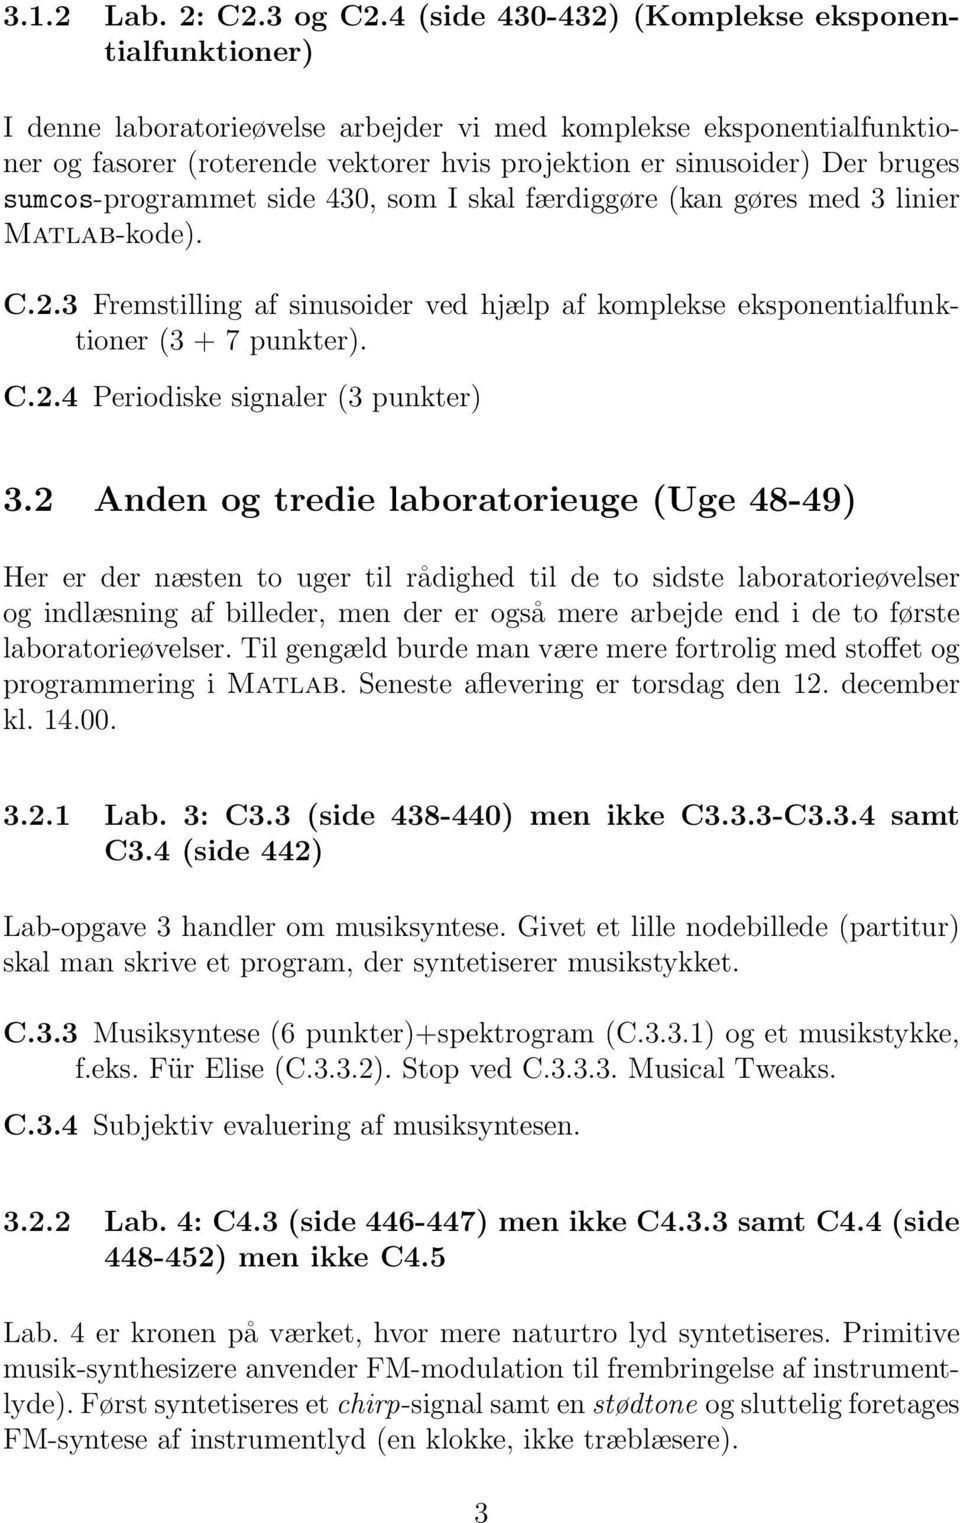 sumcos-programmet side 430, som I skal færdiggøre (kan gøres med 3 linier Matlab-kode). C.2.3 Fremstilling af sinusoider ved hjælp af komplekse eksponentialfunktioner (3 + 7 punkter). C.2.4 Periodiske signaler (3 punkter) 3.